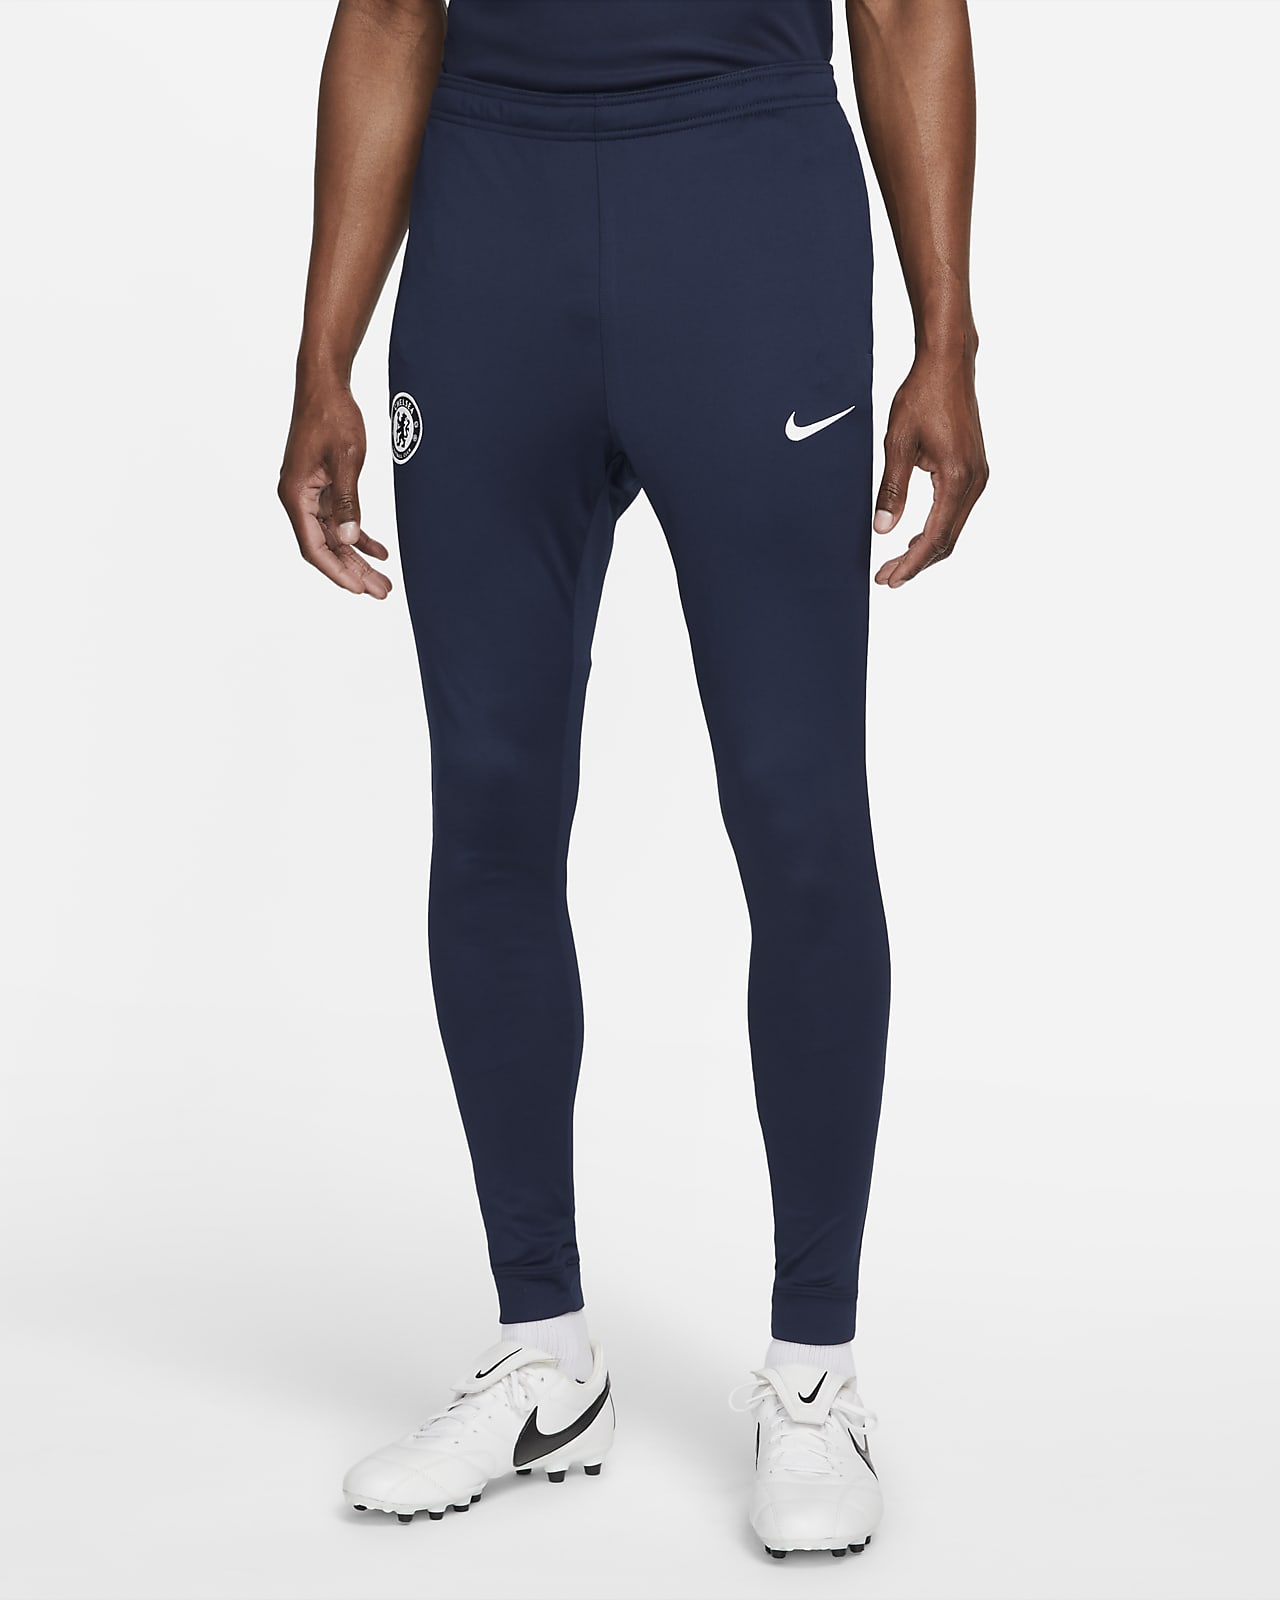 totaal Verbinding op gang brengen Chelsea FC Strike Nike knit voetbaltrainingsbroek met Dri-FIT voor heren.  Nike NL